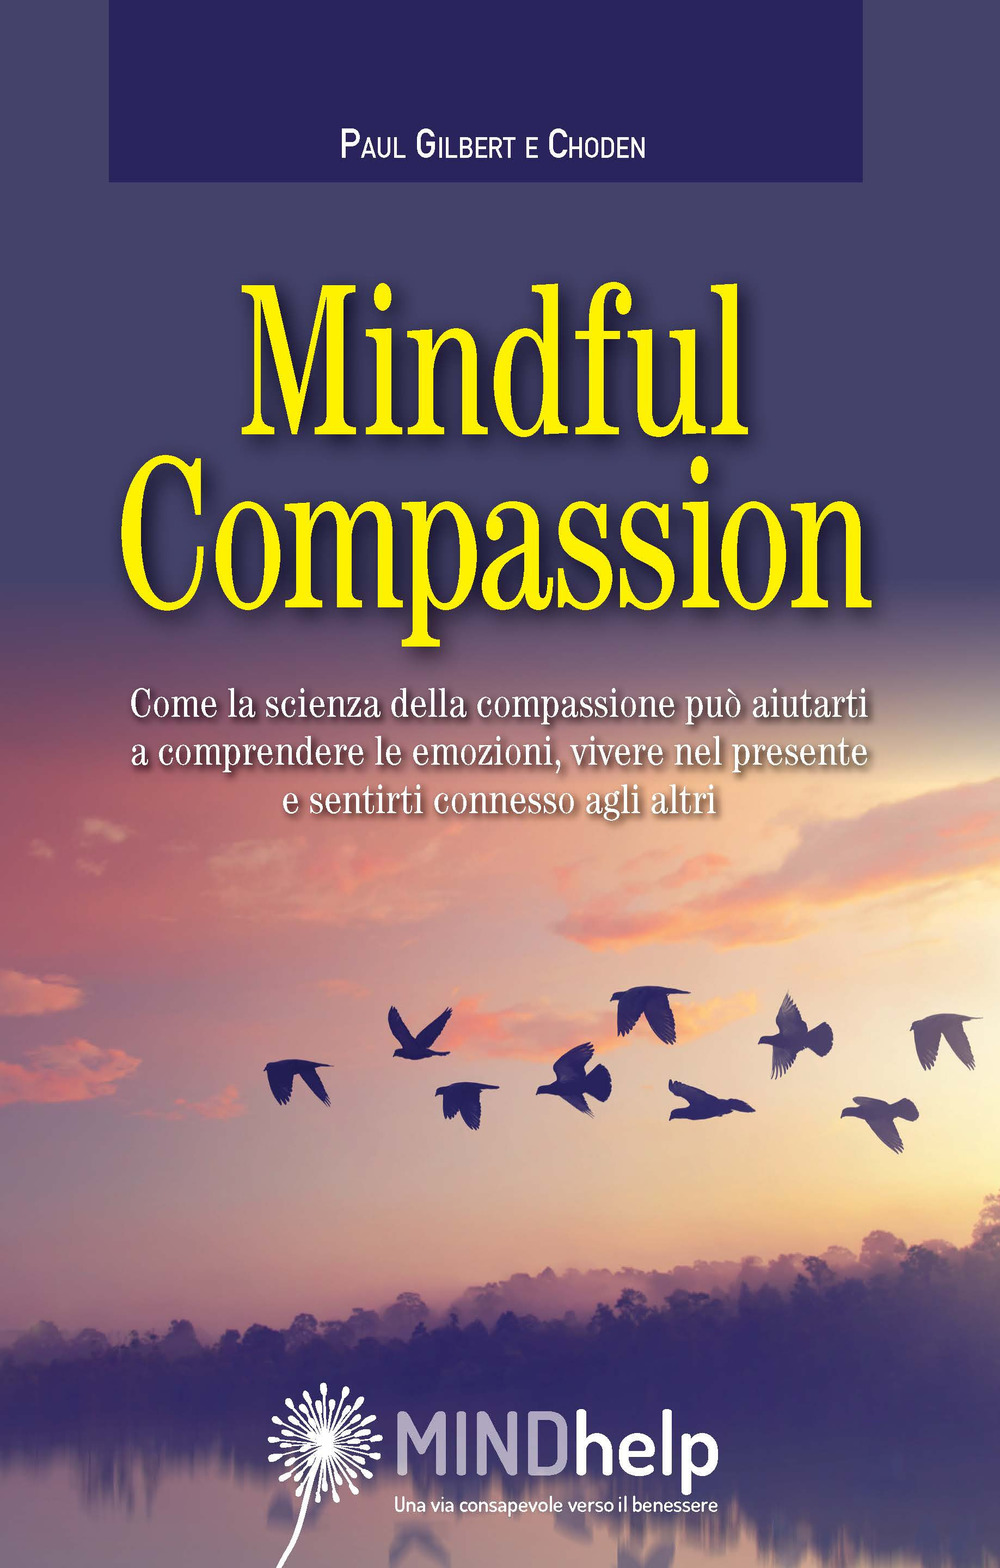 Libri Paul Gilbert / Choden - Mindful Compassion NUOVO SIGILLATO, EDIZIONE DEL 10/07/2019 SUBITO DISPONIBILE